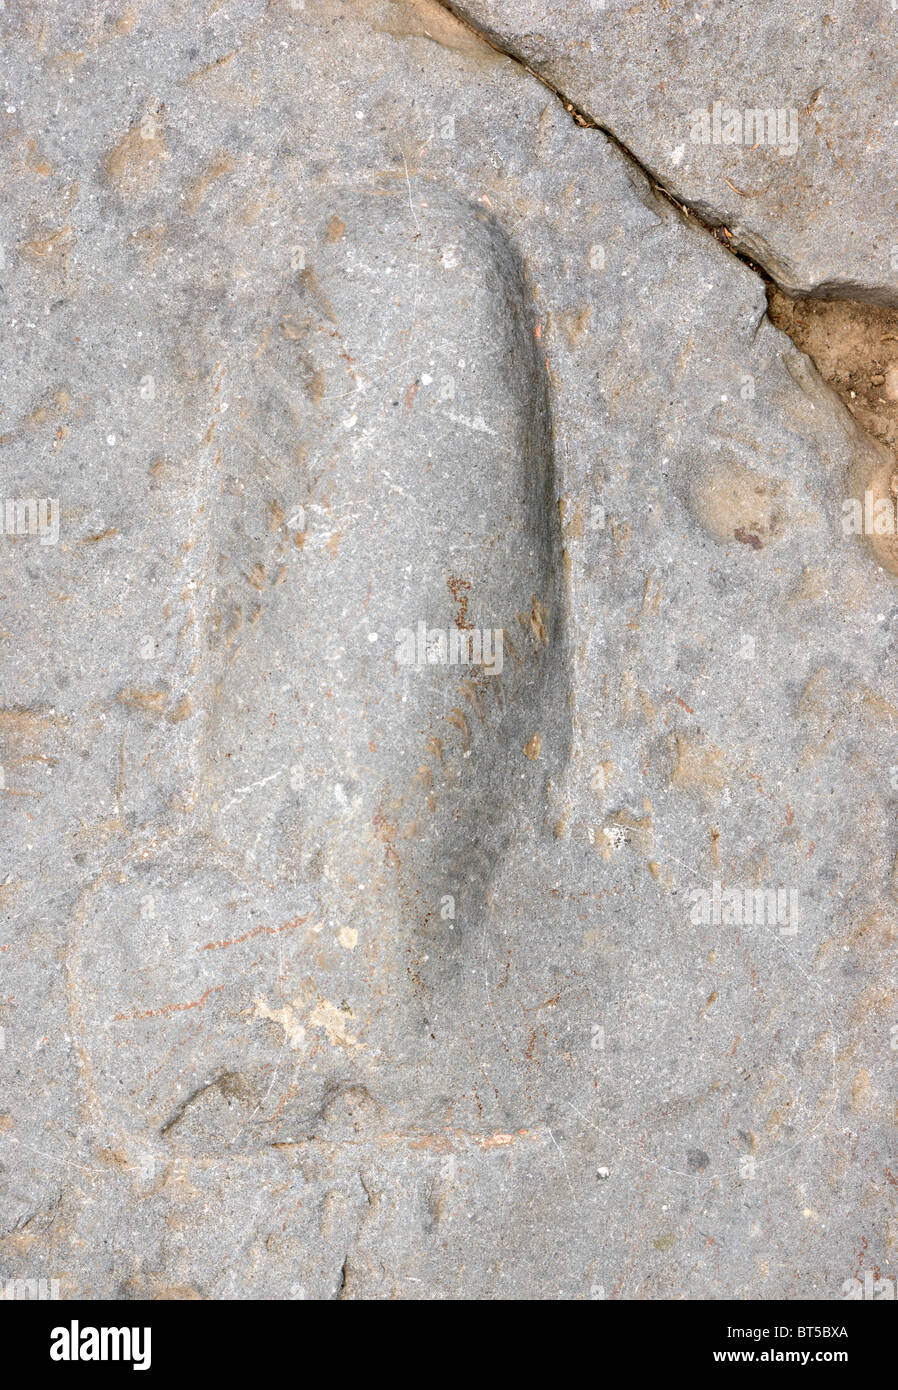 Rocca di Papa, Italia, simbolo fallico bassorilievo sulla via sacra Foto Stock